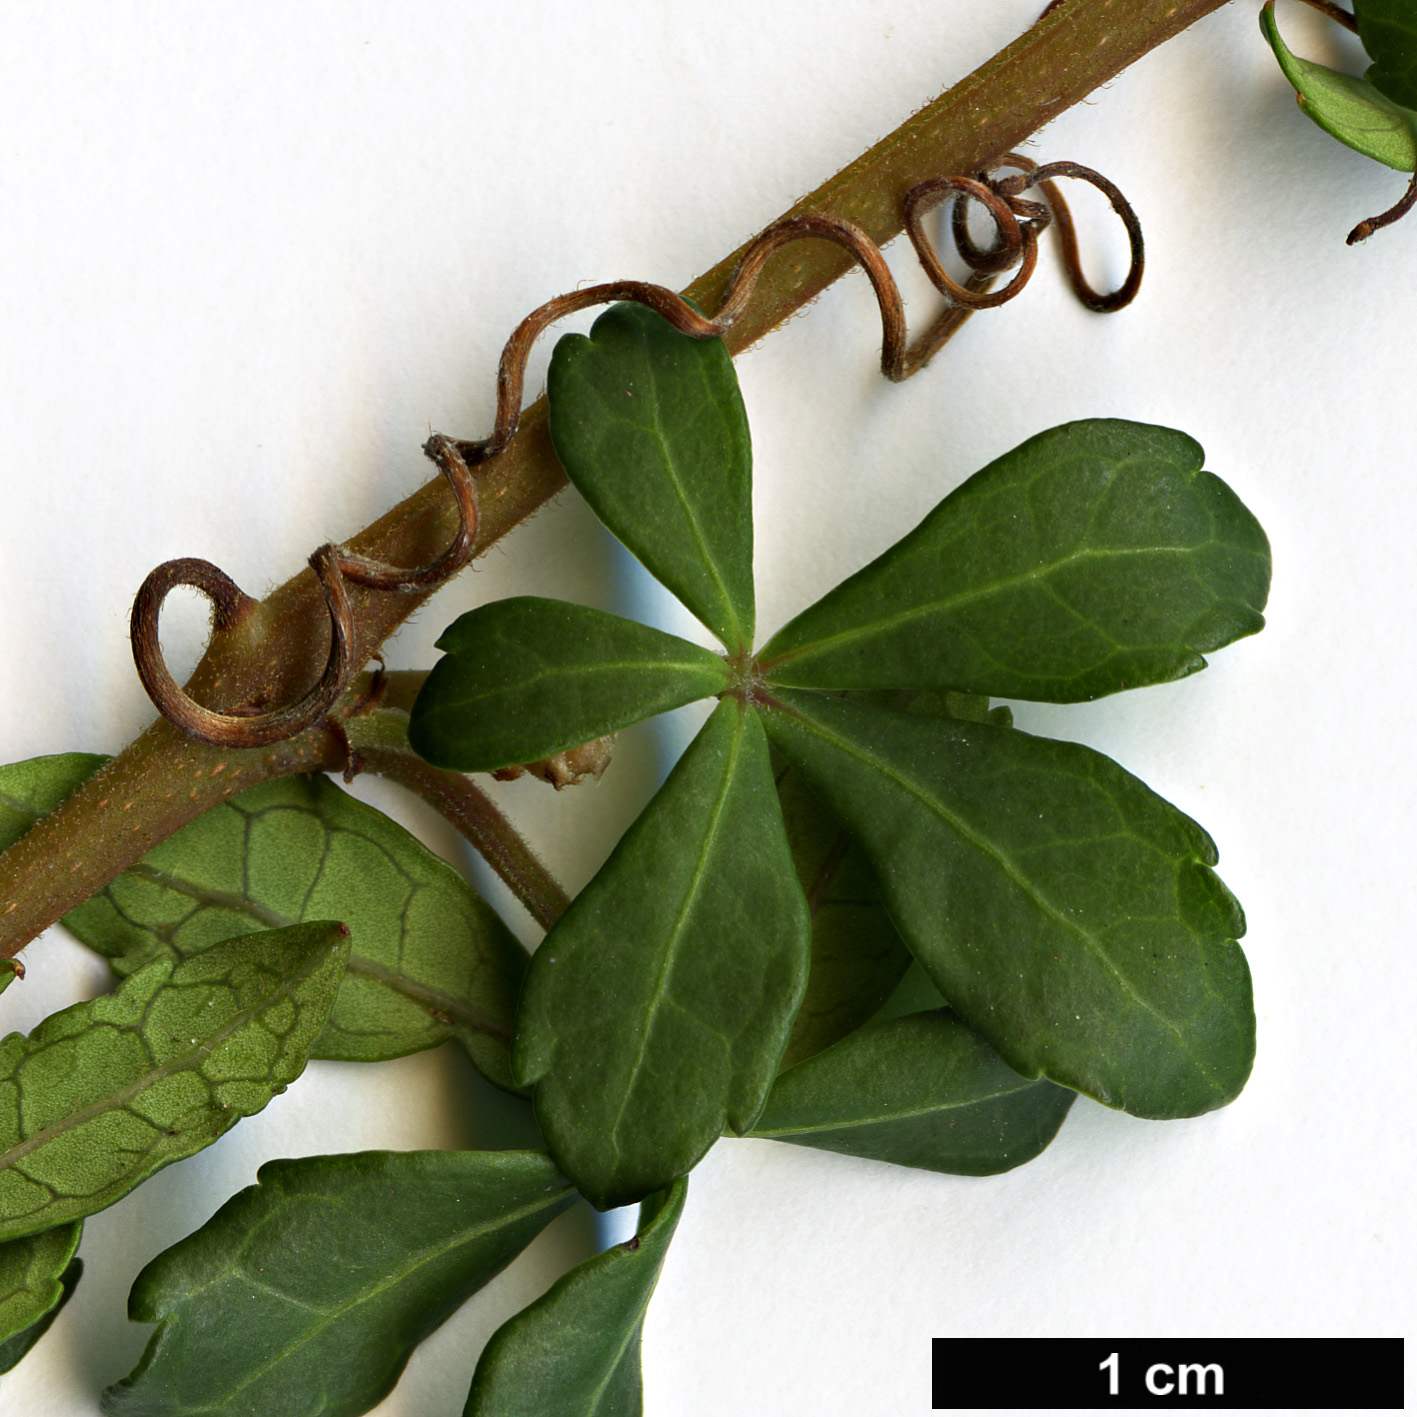 High resolution image: Family: Vitaceae - Genus: Cissus - Taxon: striatus